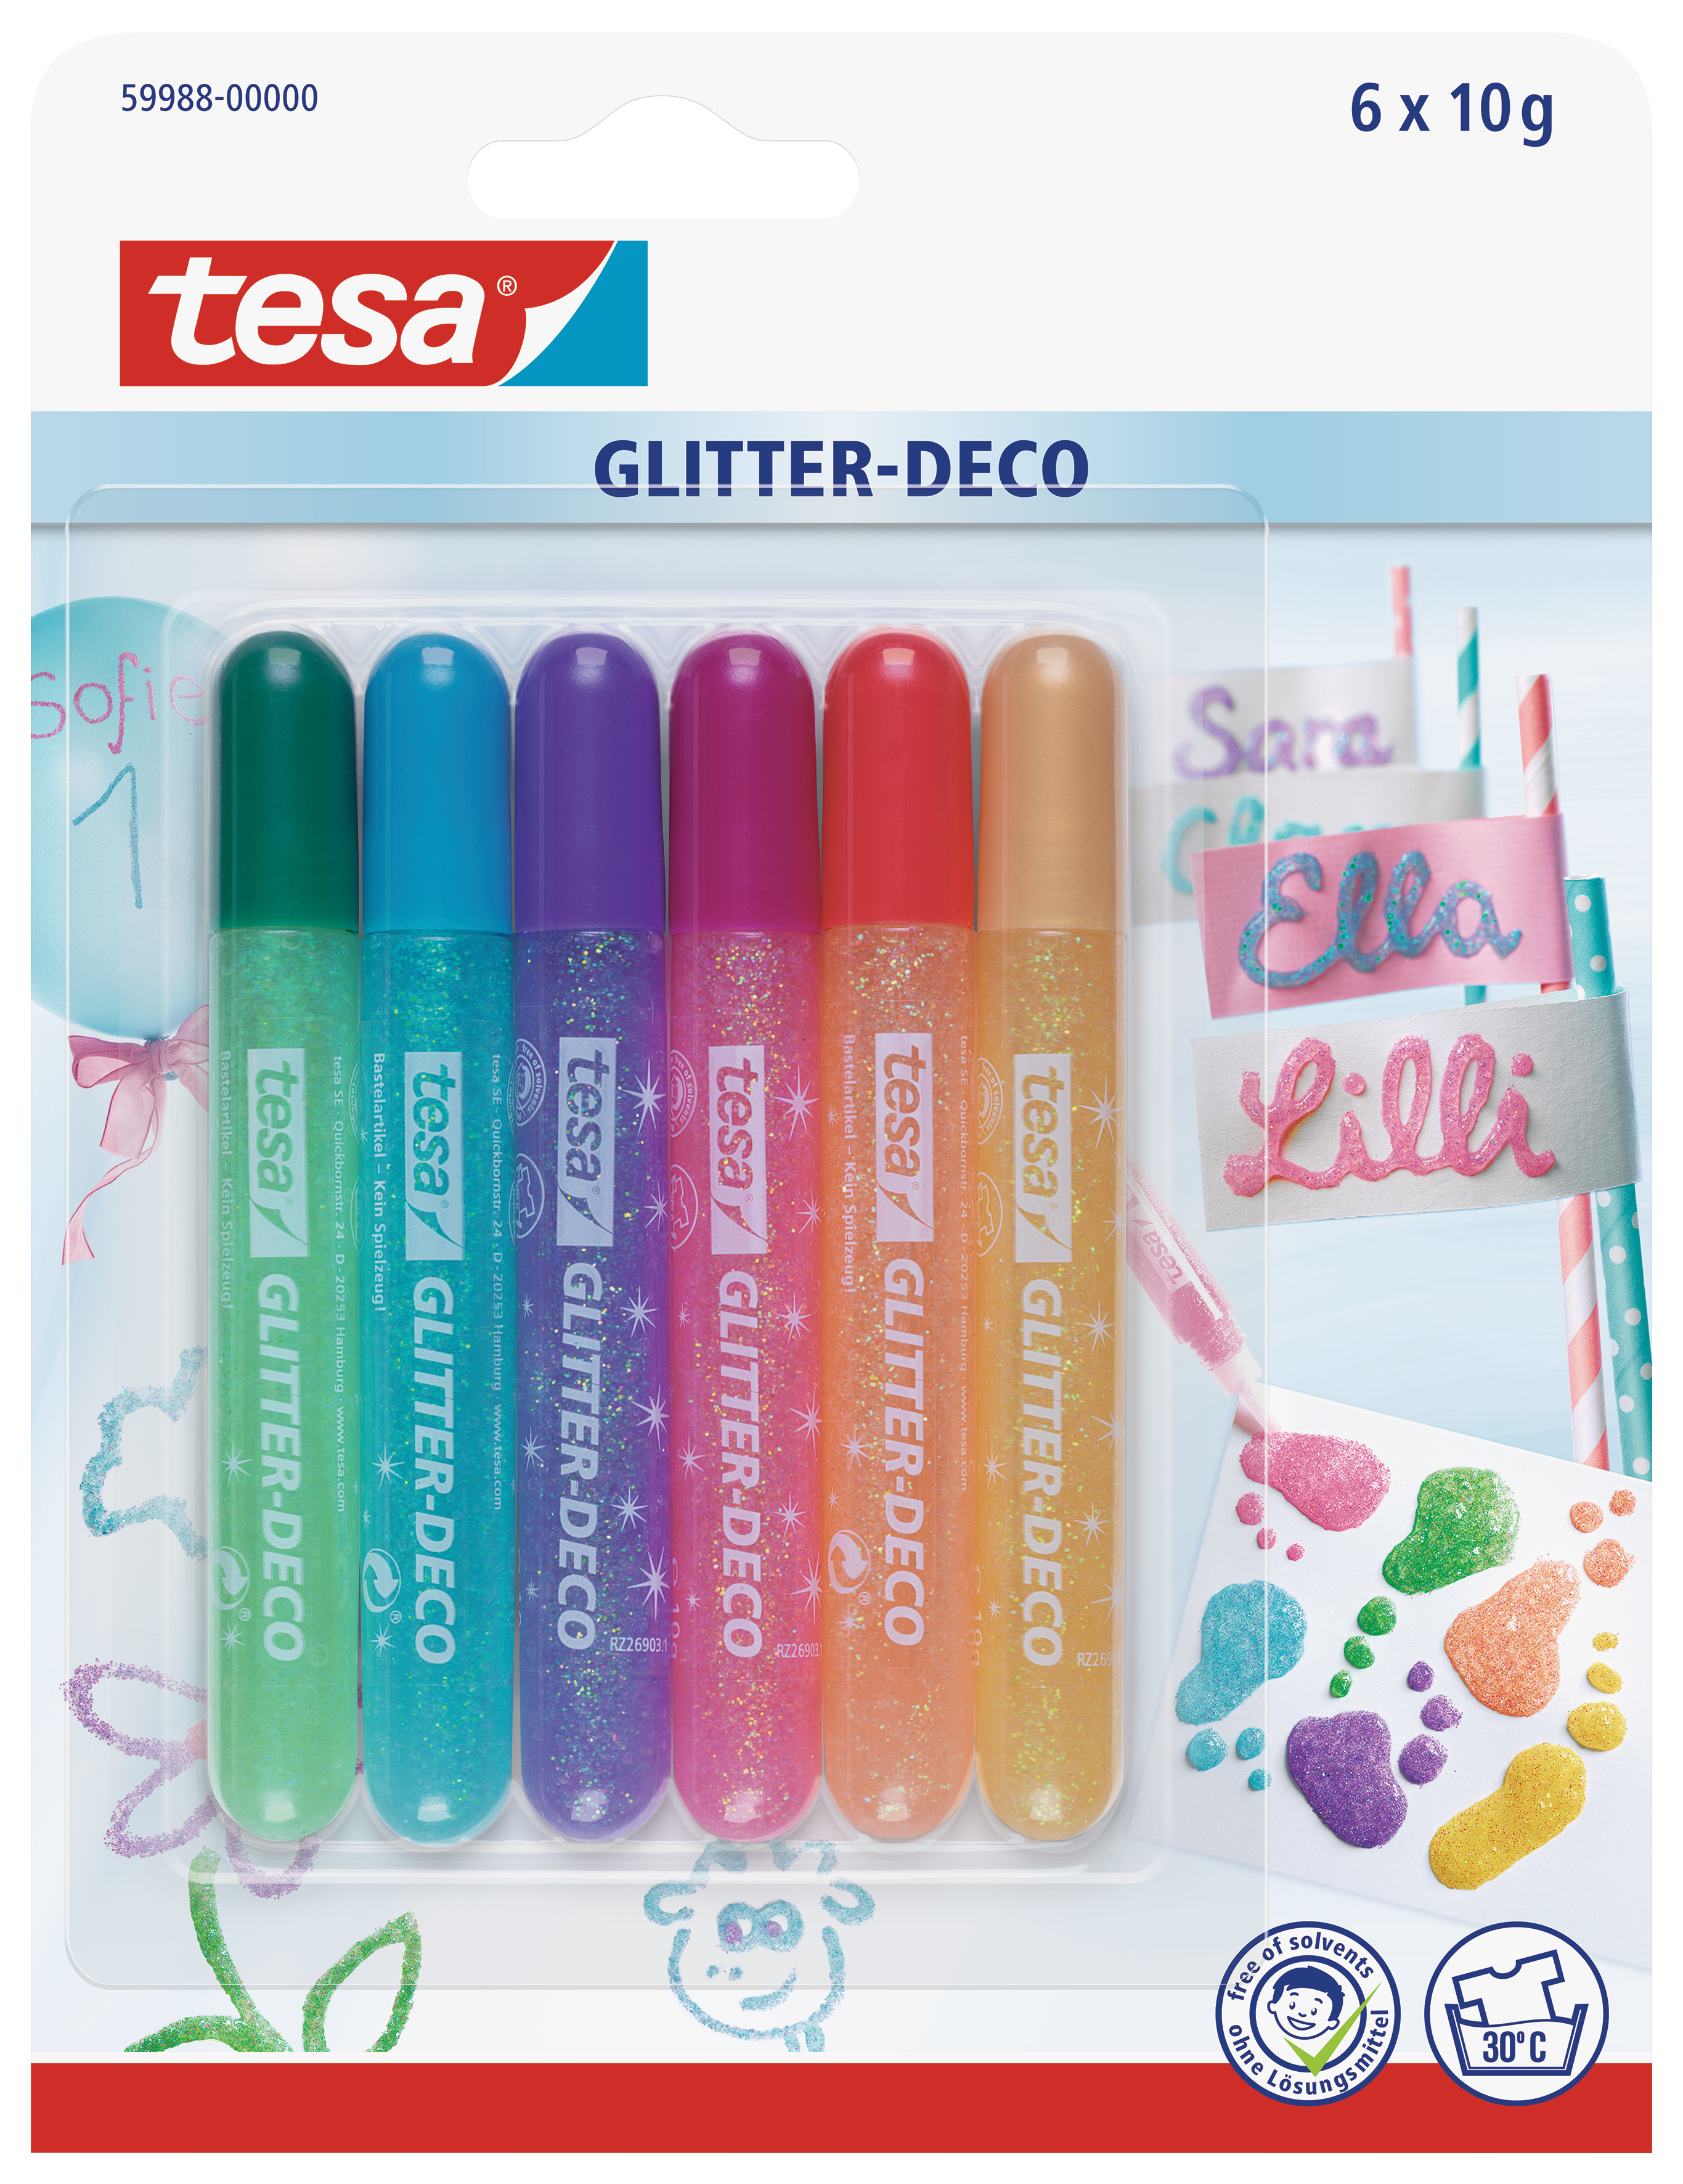 TESA Glitter Deco Candy Colors 599880000 6x10g 6 pcs.